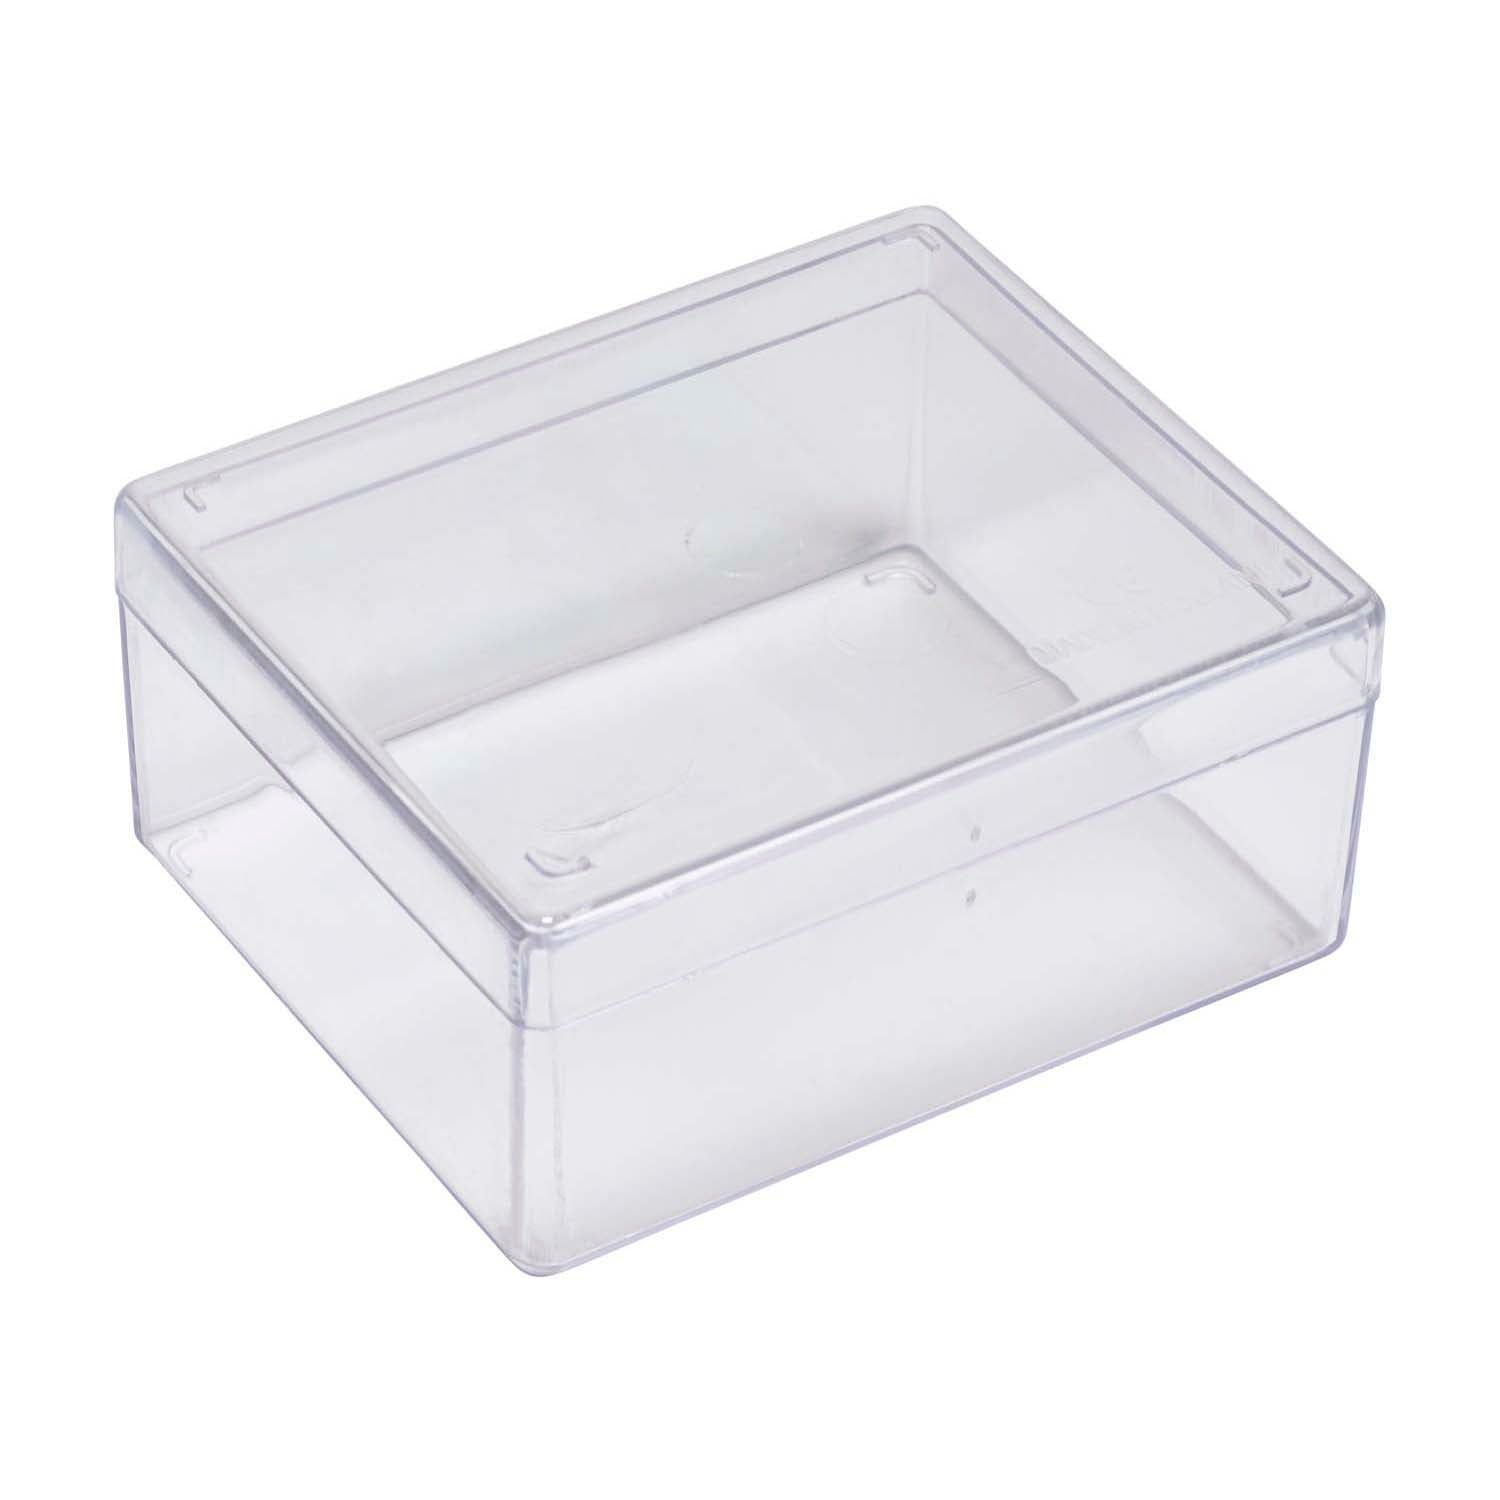 Clear Plexiglass Box with Hinged Lid - 10 x 10 x 10